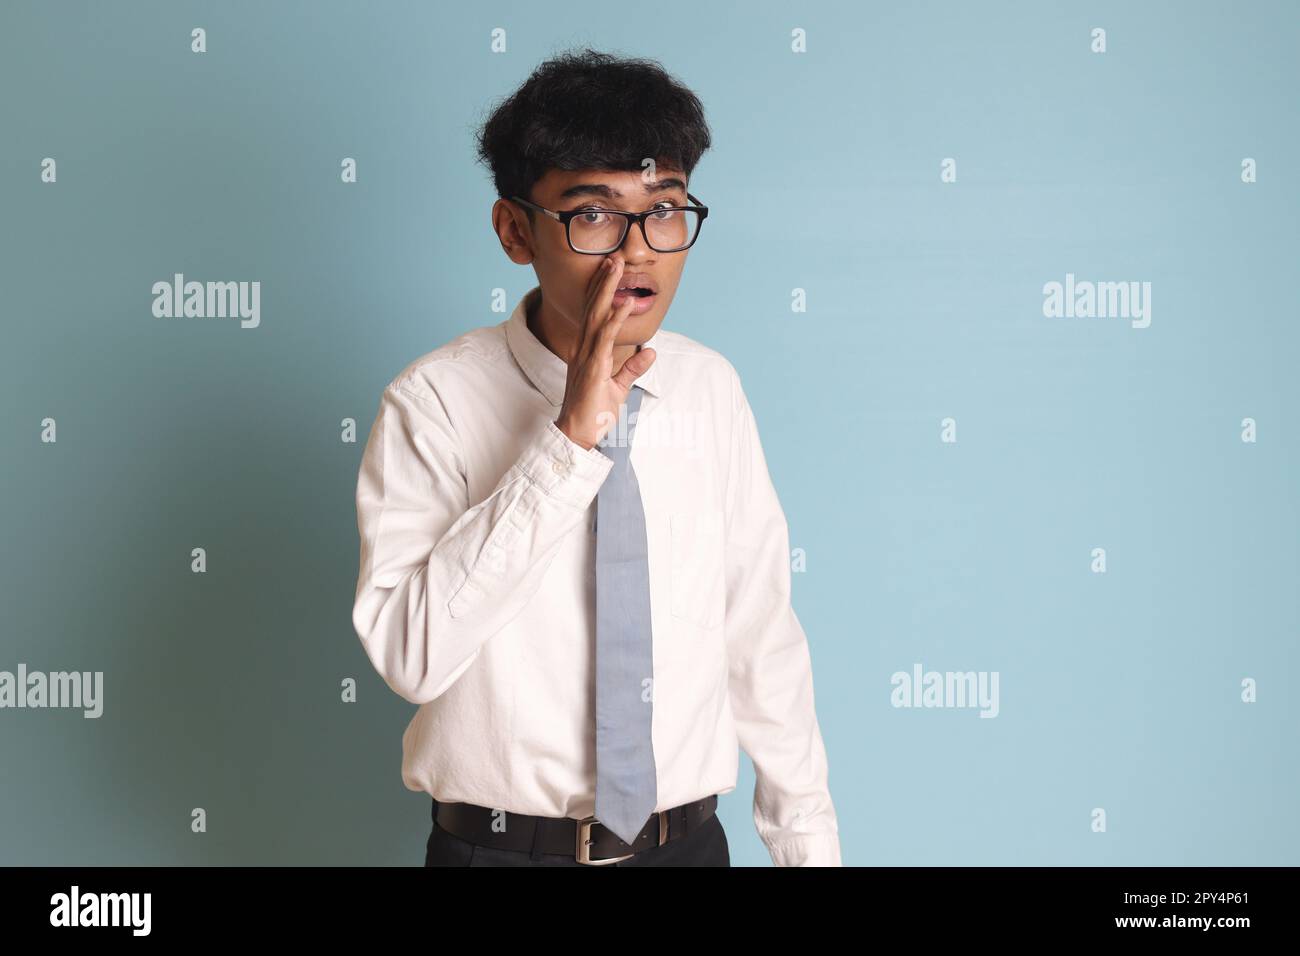 Élève de lycée indonésien portant un uniforme de chemise blanc avec une cravate grise pour murmurer une conversation malicieuse, main sur la bouche pour dire secret r Banque D'Images